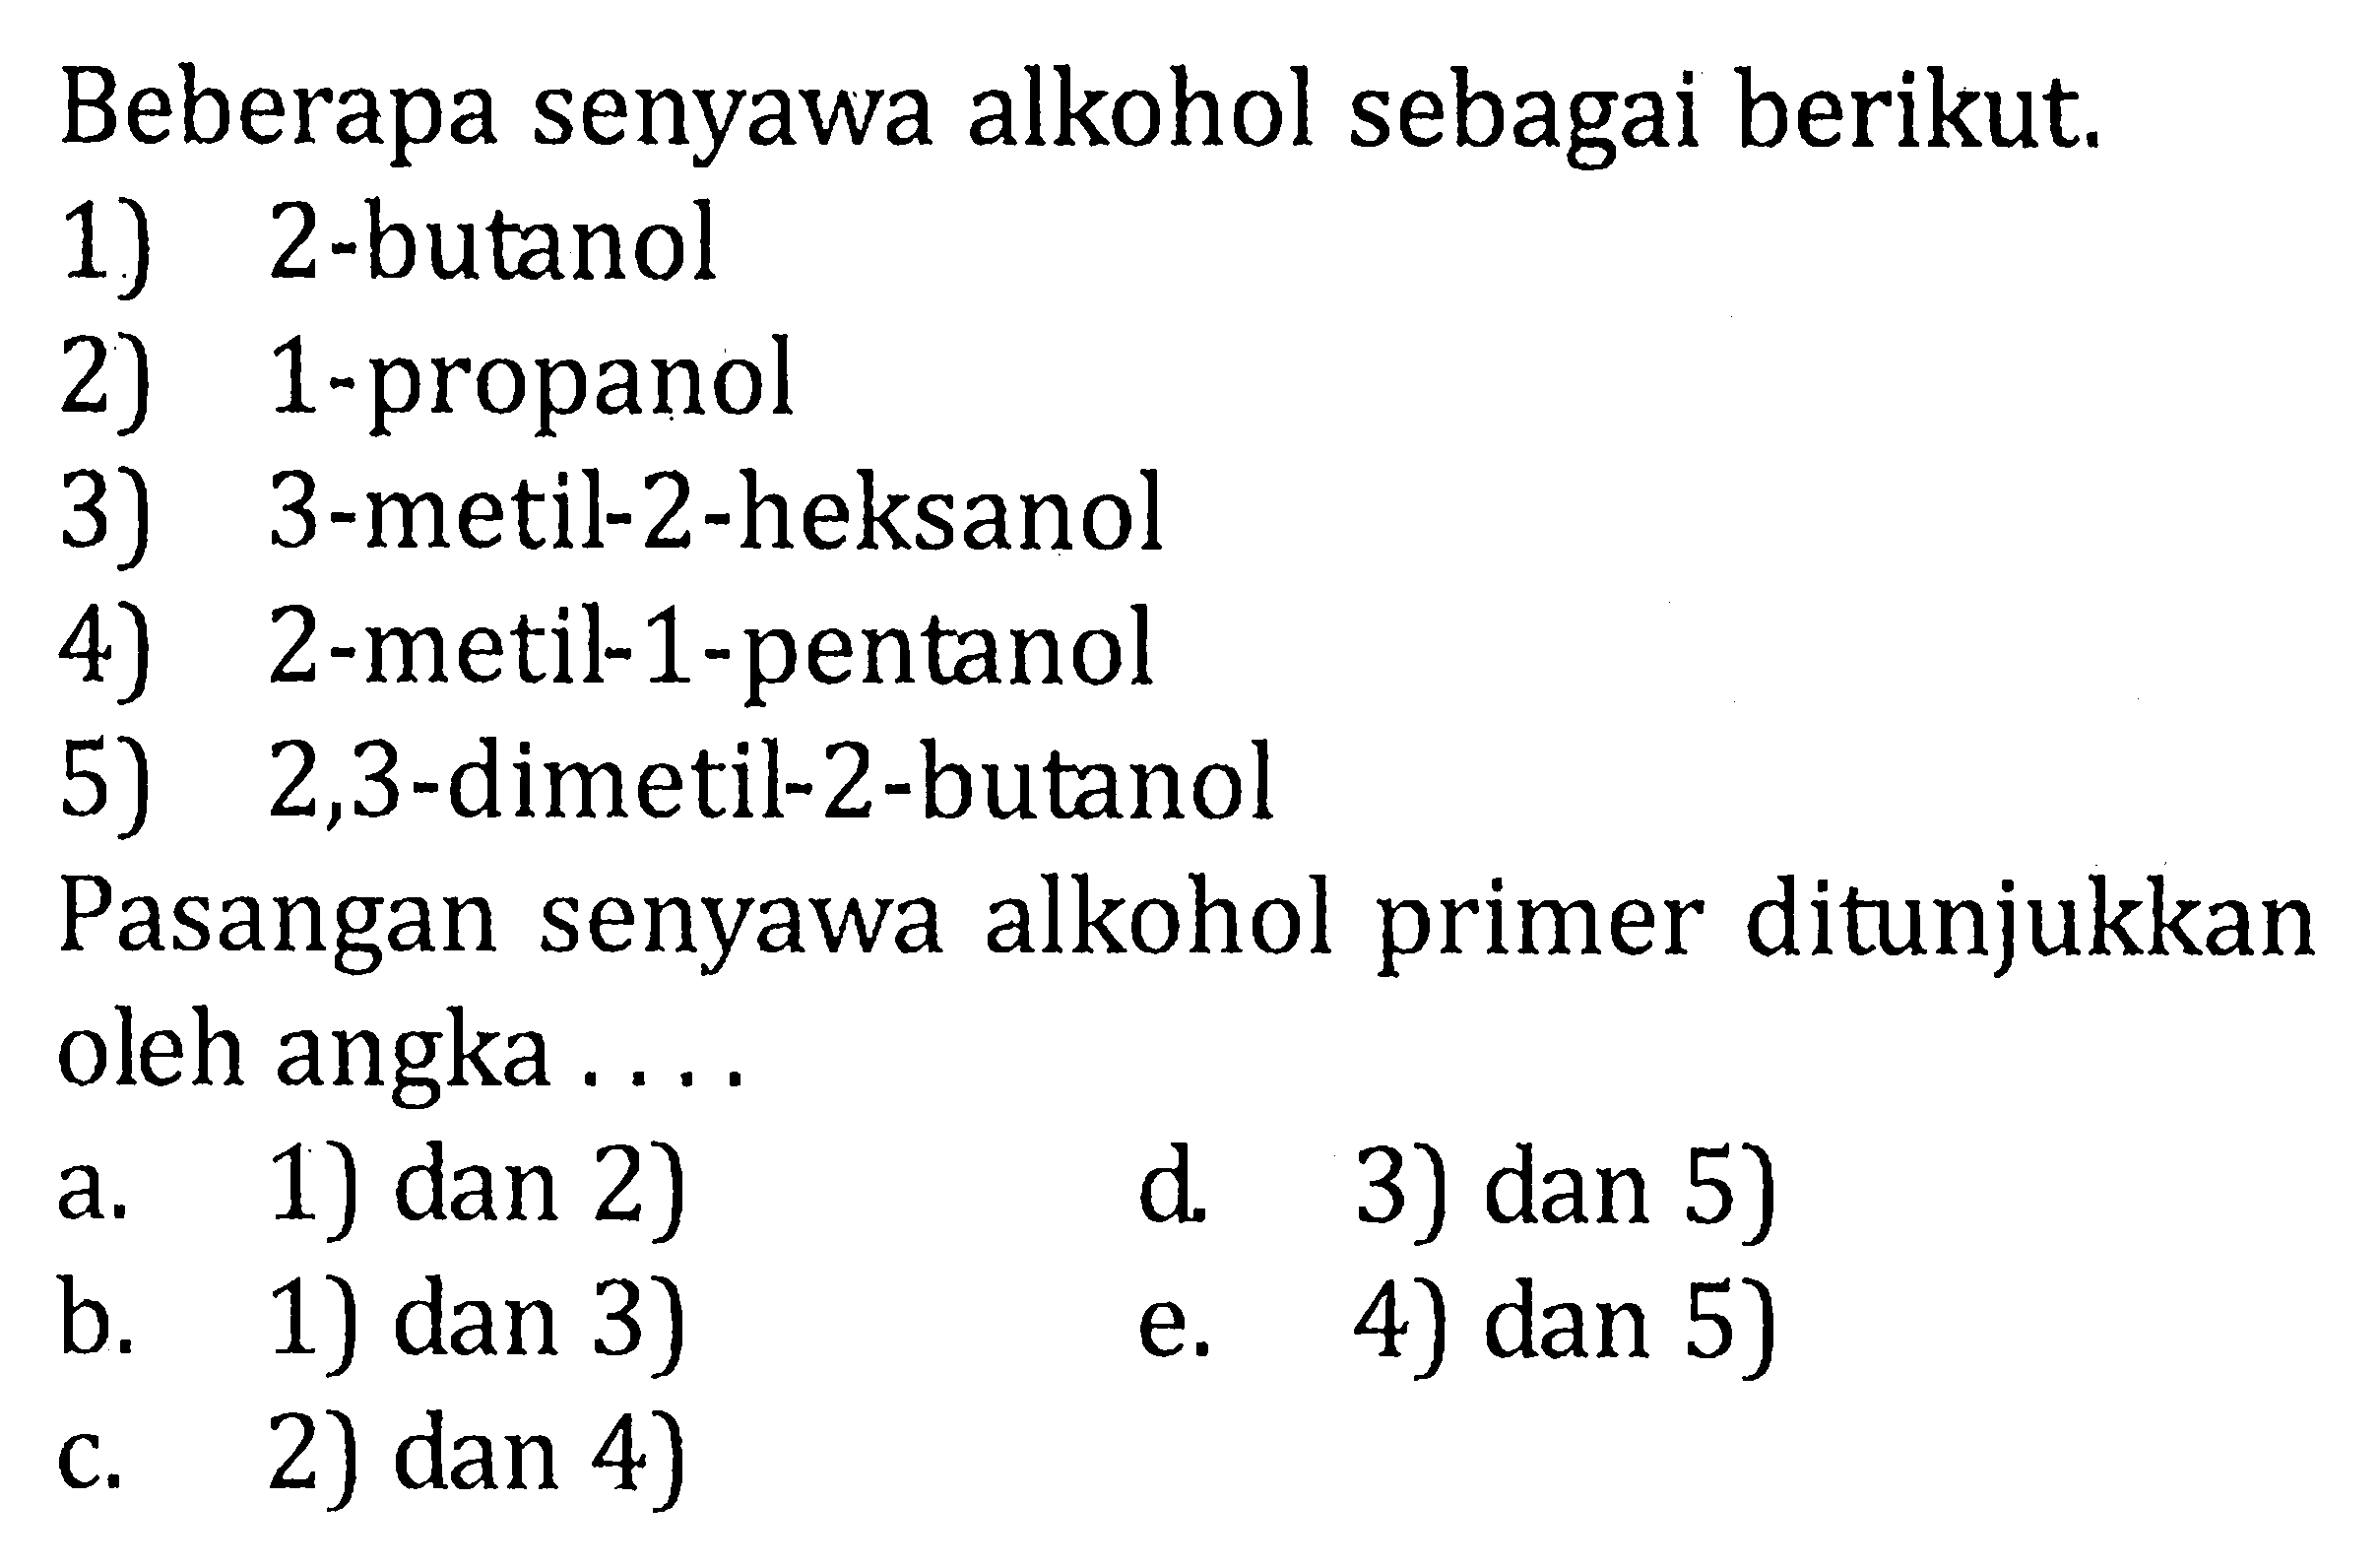 Beberapa senyawa alkohol sebagai berikut.1) 2-butanol 2) 1-propanol 3) 3-metil-2-heksanol 4) 2-metil-1-pentanol 5) 2,3-dimetil-2-butanol Pasangan senyawa alkohol primer ditunjukkan oleh angka....